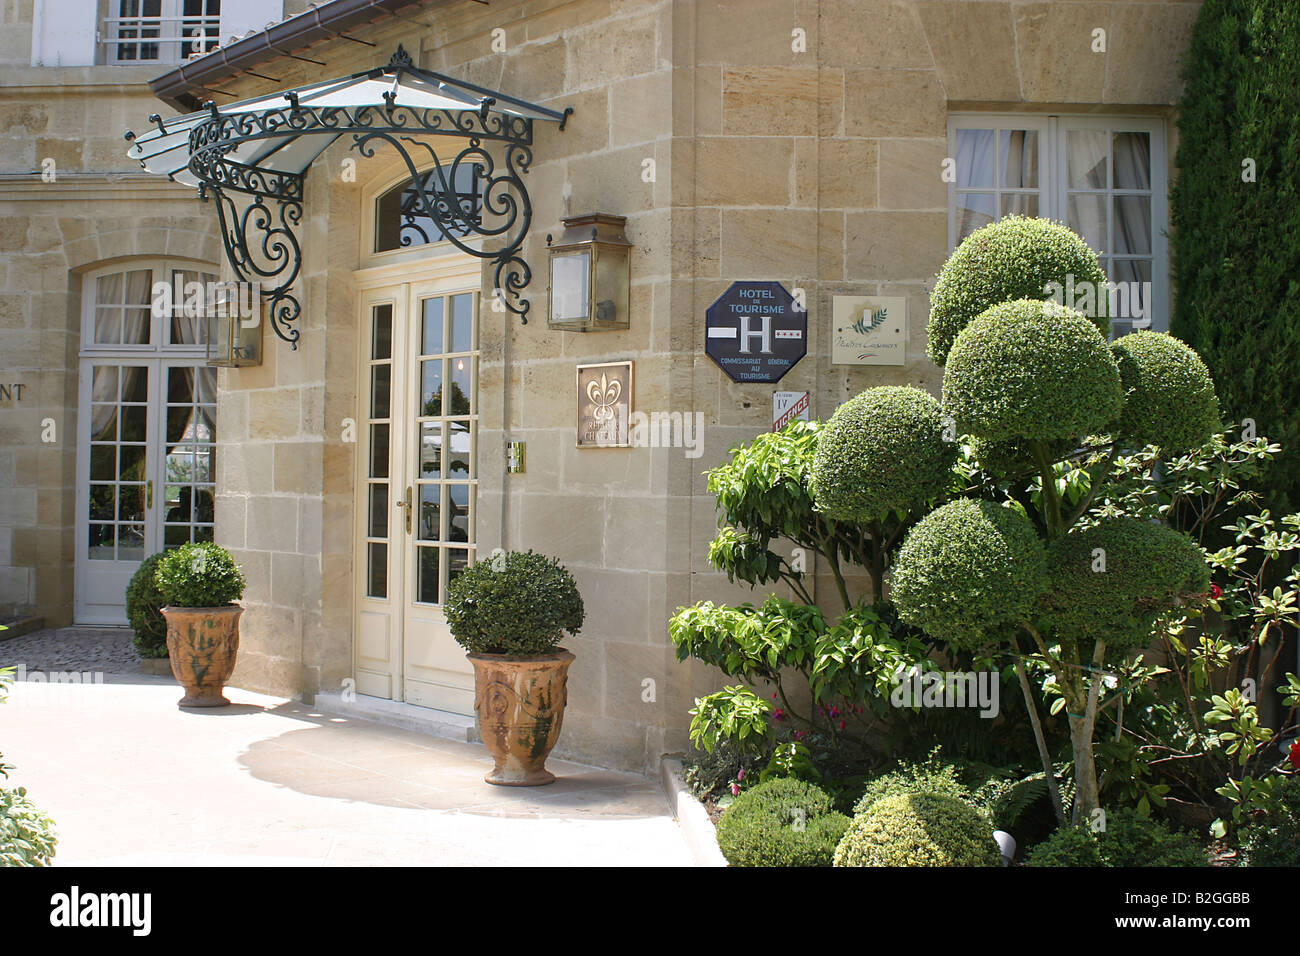 St. Emilion historische Bezirke Stadt Frankreich Land Haus malerische Europa Stockfoto